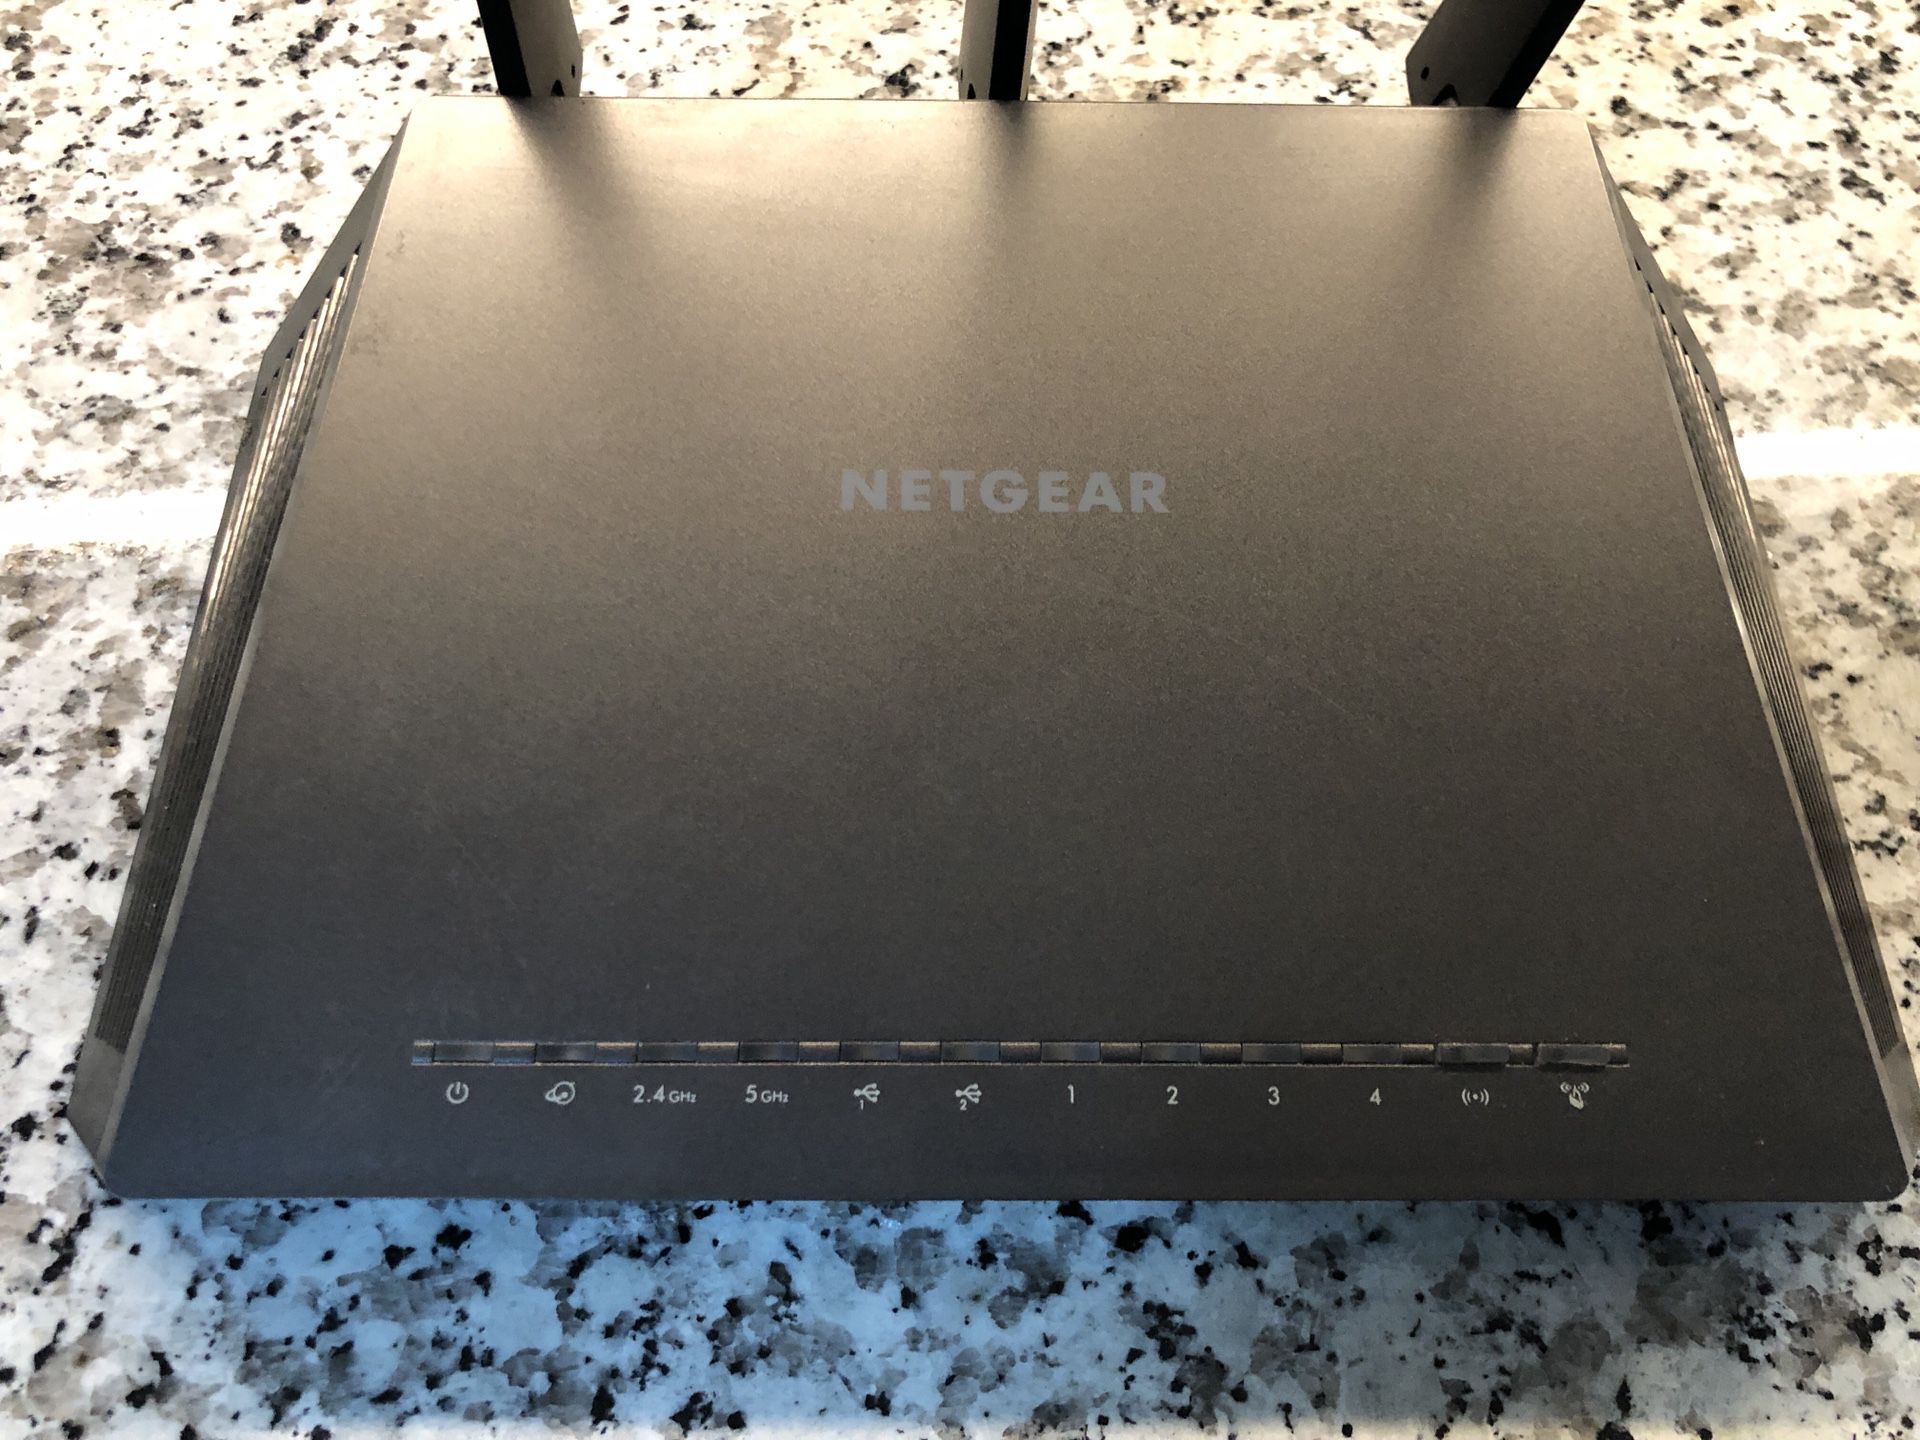 Netgear Nighthawk R7000 WiFi Router